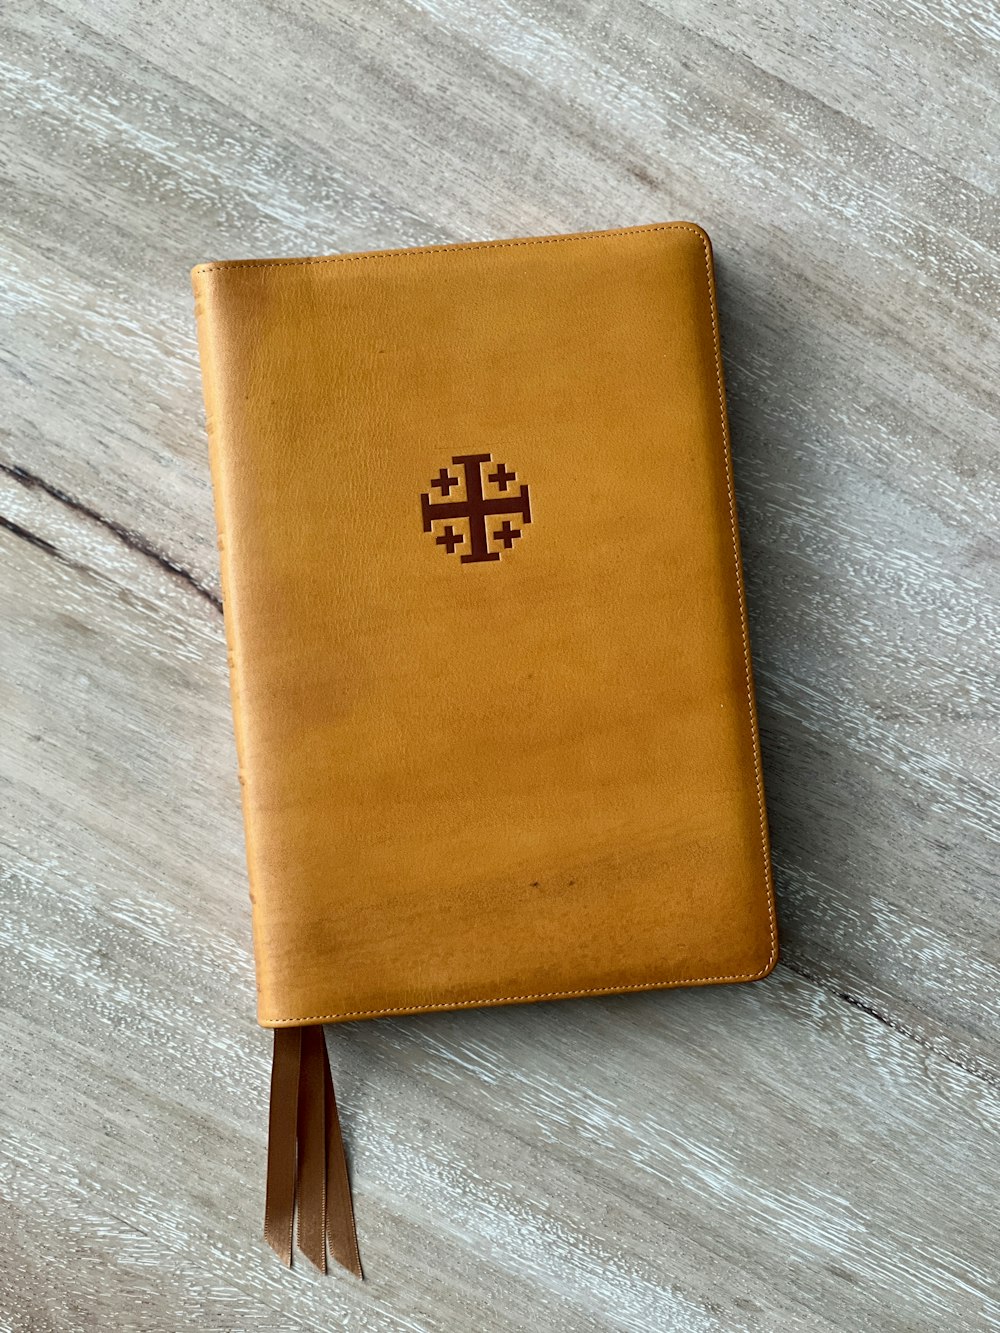 um diário de couro marrom com uma cruz sobre ele